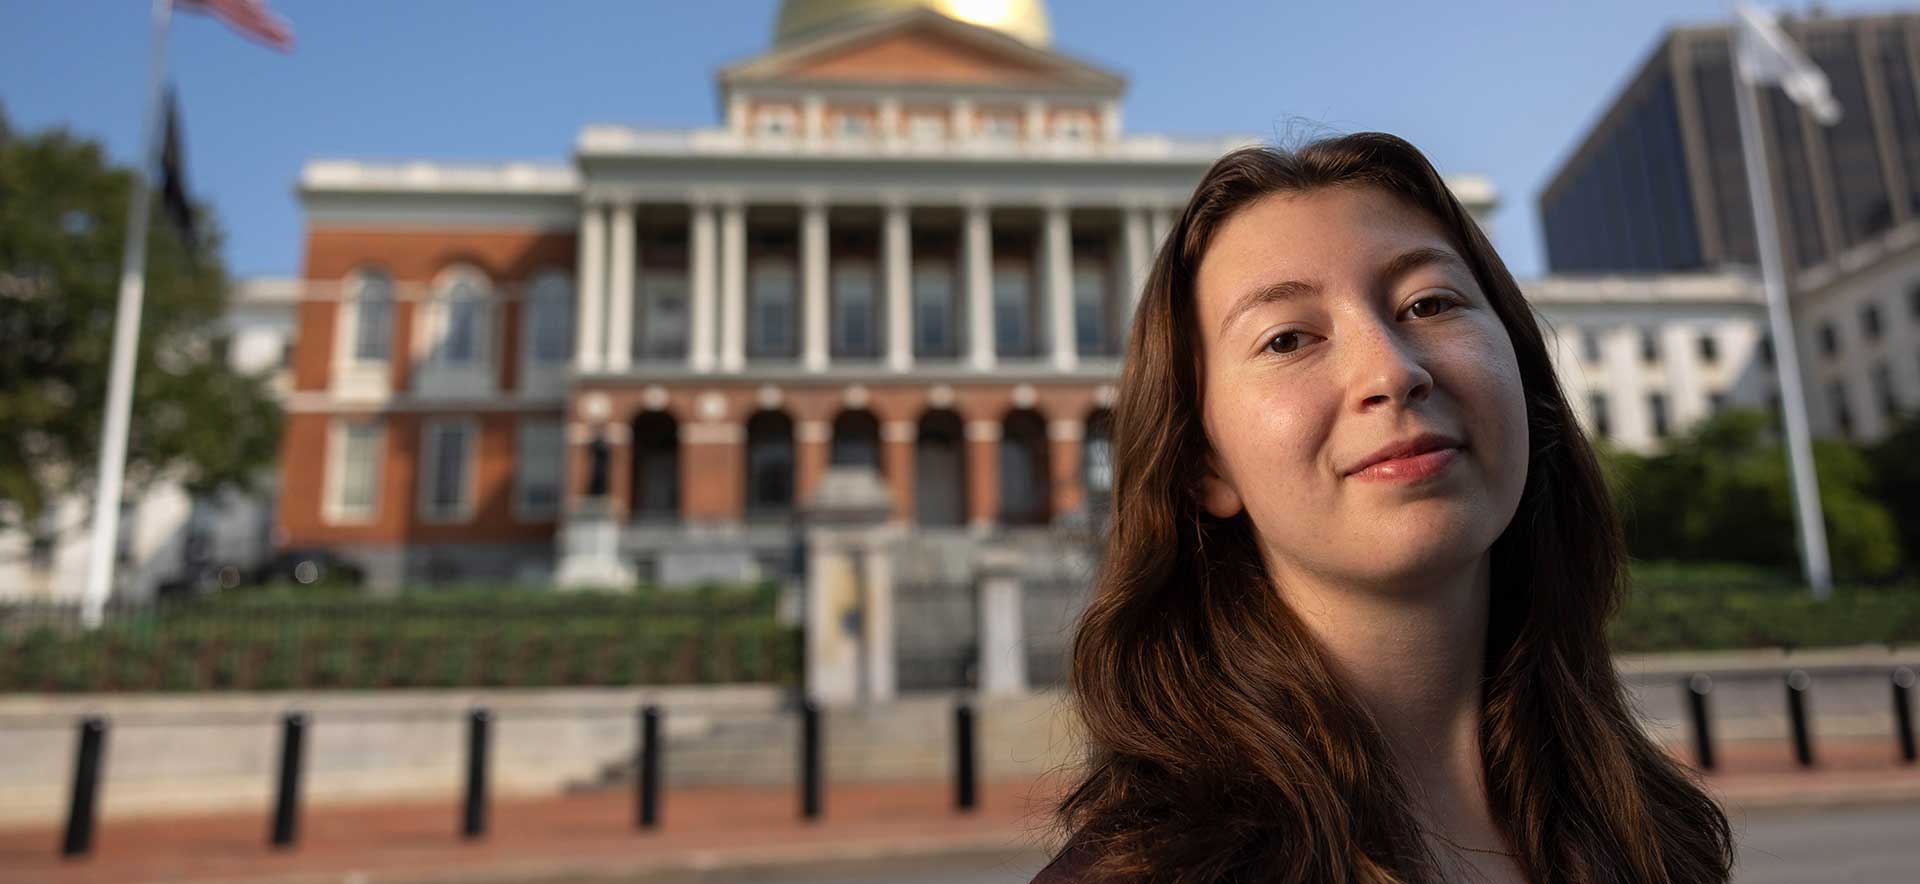 Aviva in front of the Massachusetts state house